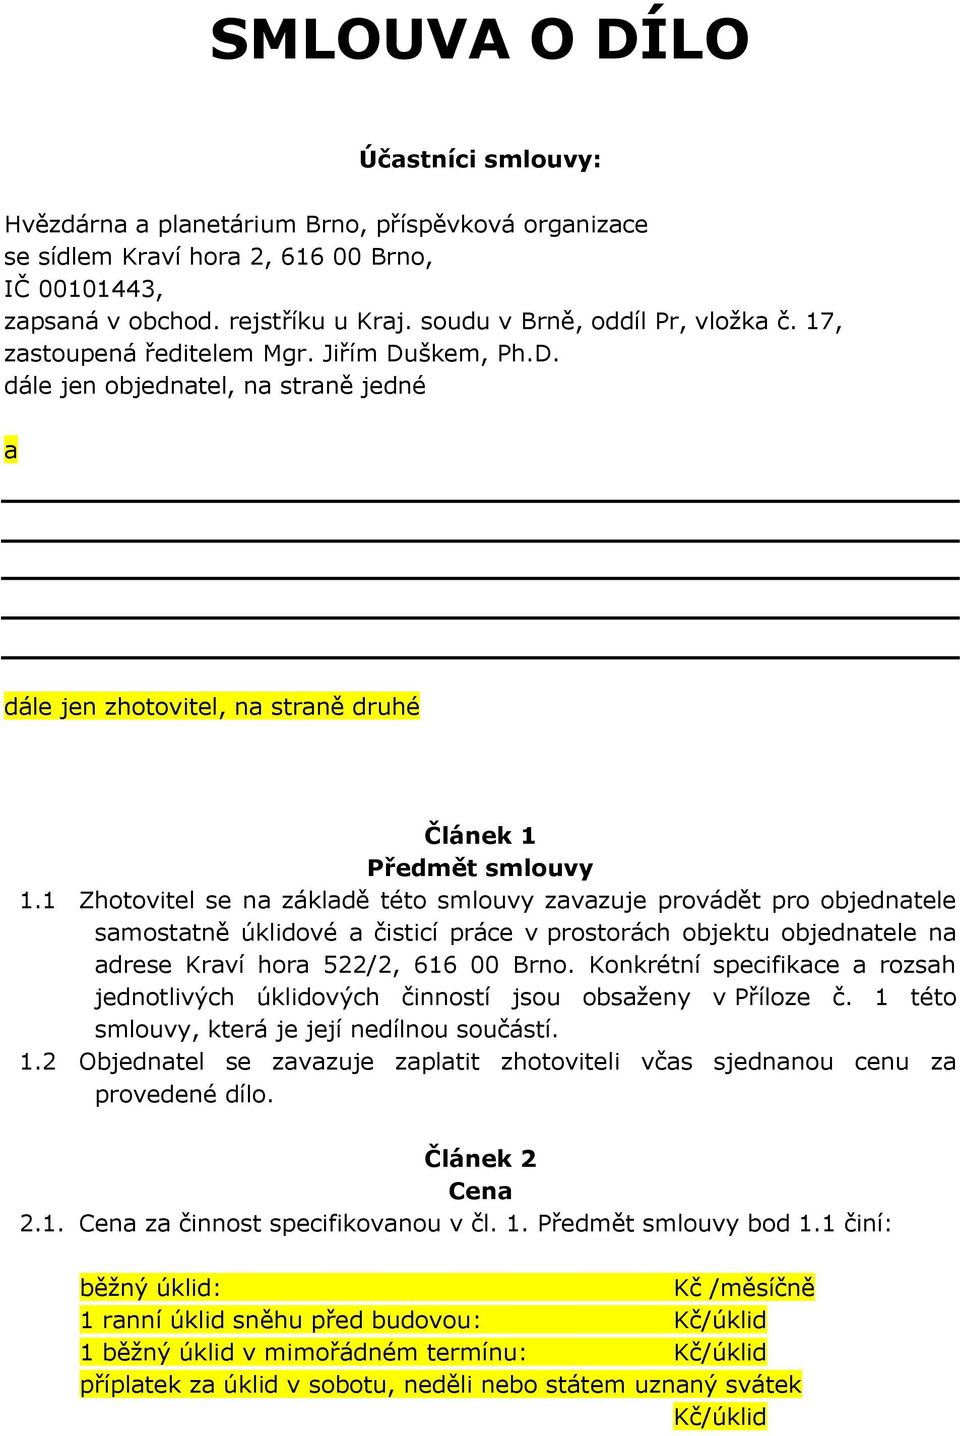 1 Zhotovitel se na základě této smlouvy zavazuje provádět pro objednatele samostatně úklidové a čisticí práce v prostorách objektu objednatele na adrese Kraví hora 522/2, 616 00 Brno.